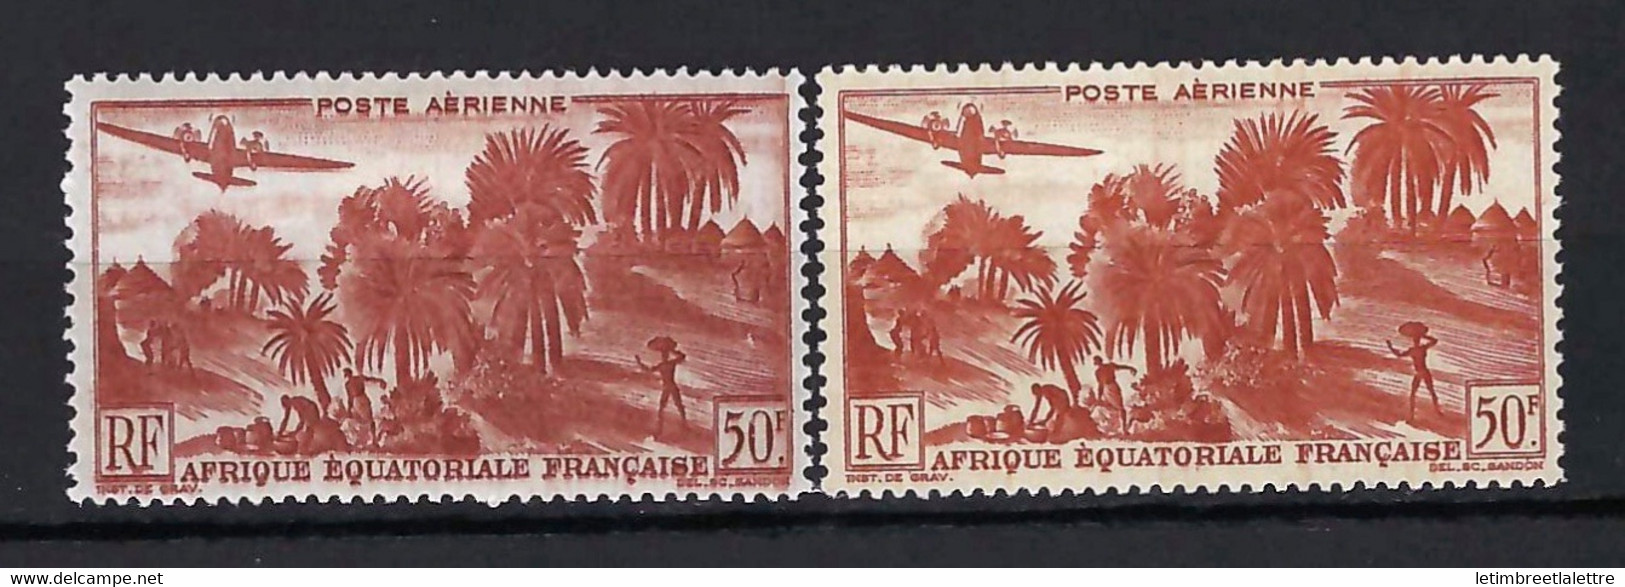 ⭐ AEF - Poste Aérienne - YT N° 50 * - Neuf Avec Charnière - Variété De Couleur - 1947 / 1952 ⭐ - Neufs